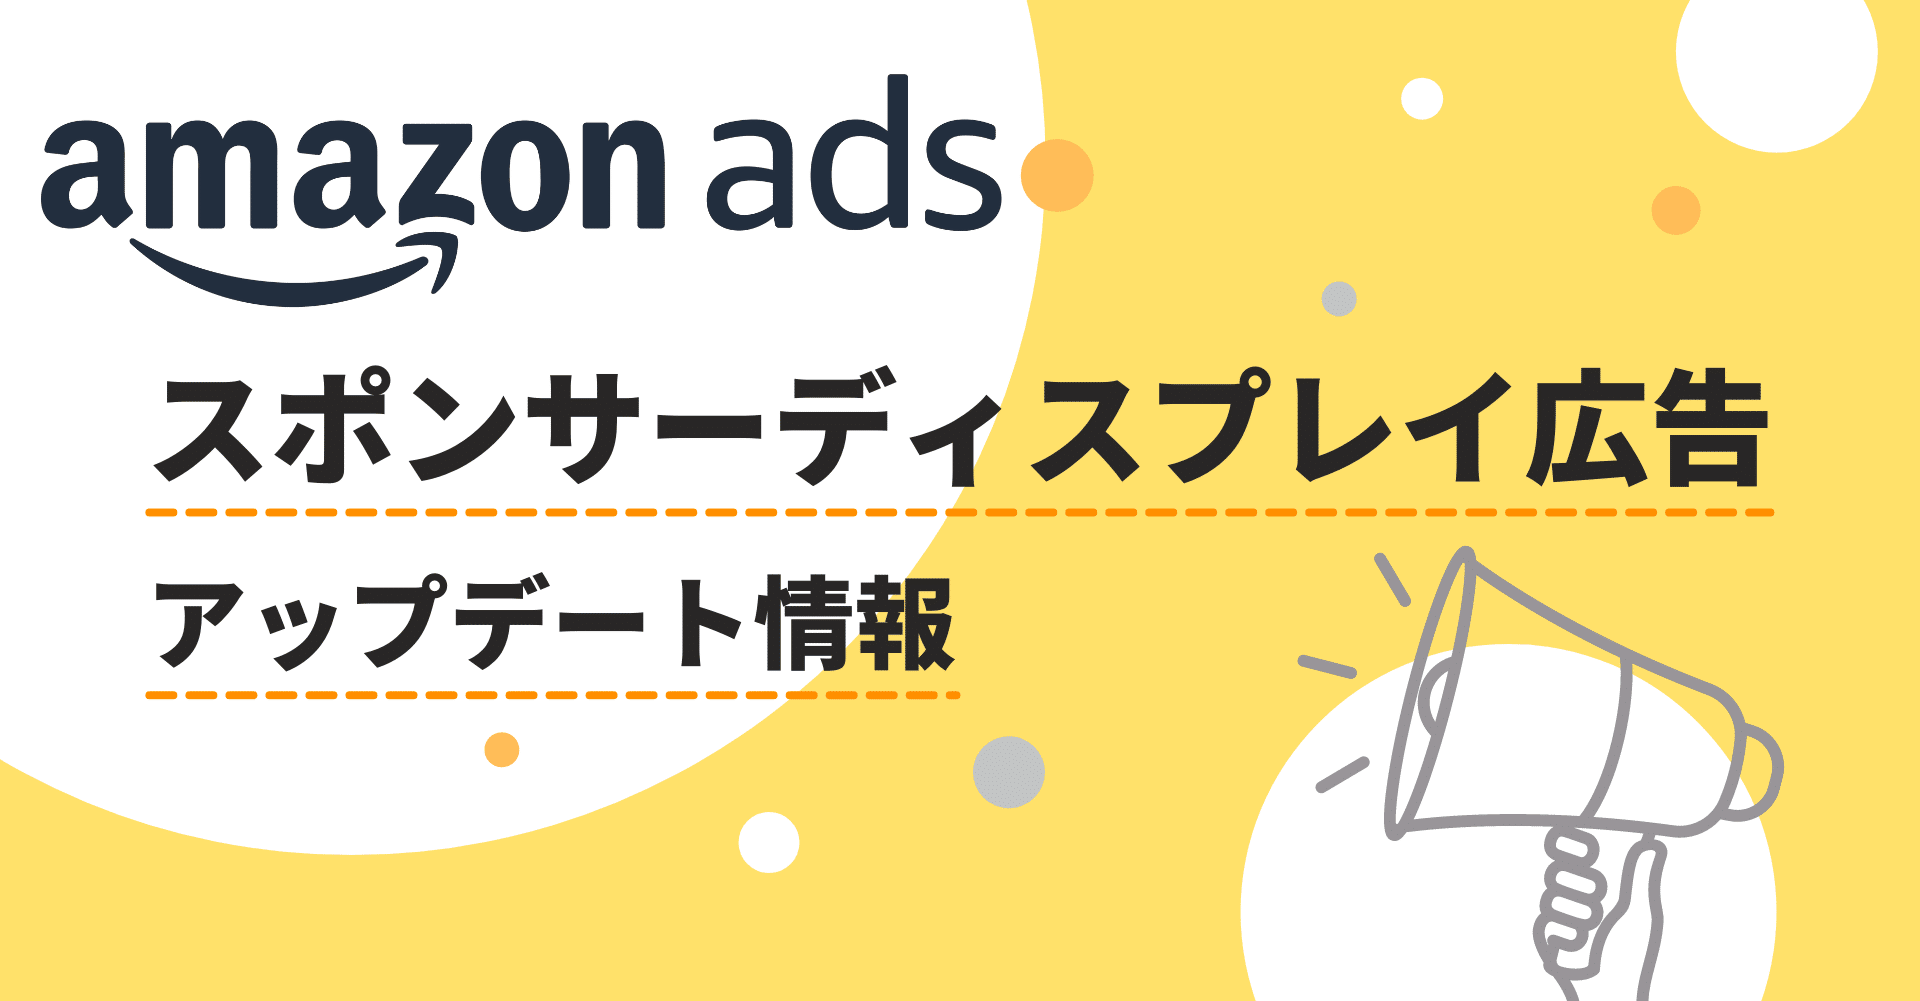 Amazon スポンサーディスプレイ広告のアップデート機能 使いこなし術 ソウルドアウト株式会社 マーケティングカンパニー Note